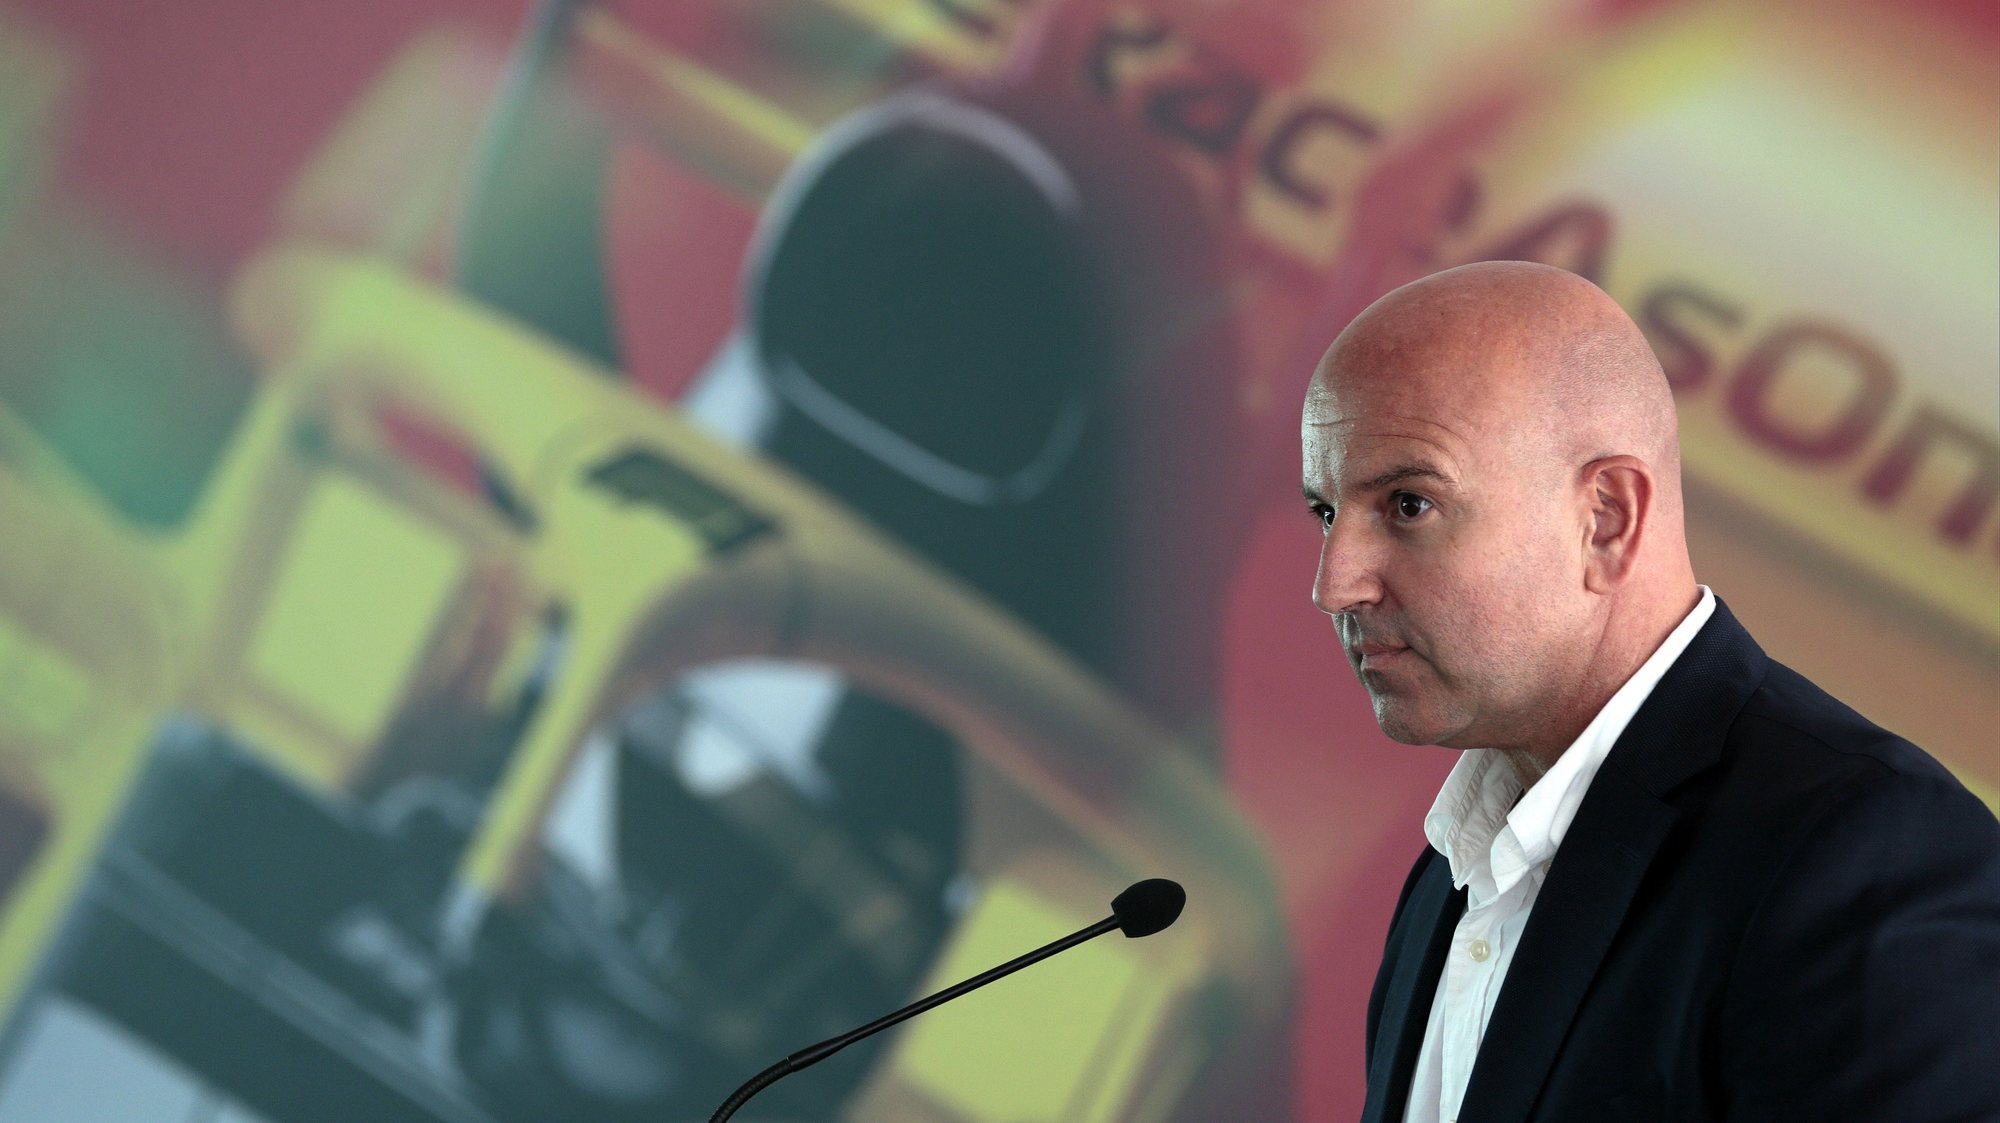 O CEO do Autódromo Internacional do Algarve (AIA), Paulo Pinheiro, durante a conferência de imprensa de apresentação de uma etapa do circuito mundial de Formula 1 no Autódromo Internacional do Algarve (AIA), em Portimão, 24 de julho 2020. FILIPE FARINHA / LUSA